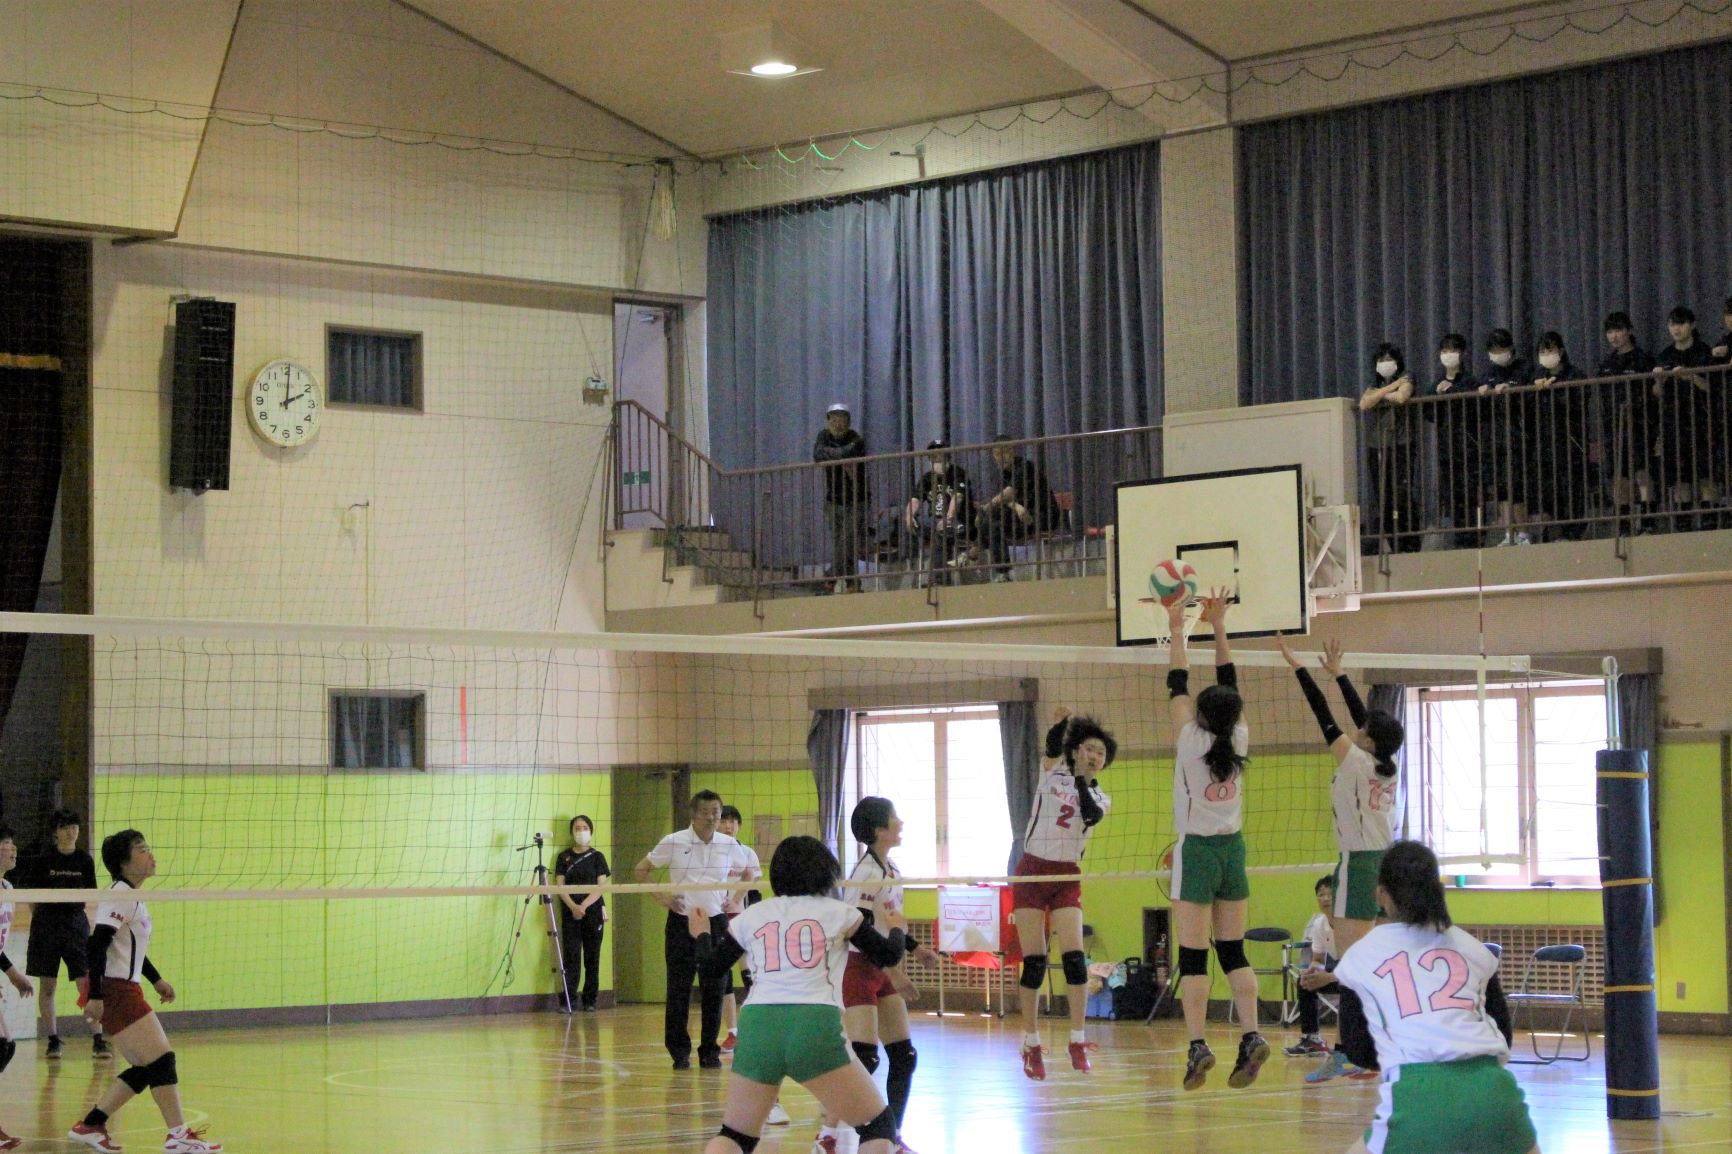 06 初の女子バレー部練習試合 日本ウェルネス宮城高等学校 タイケン学園の全日制高校